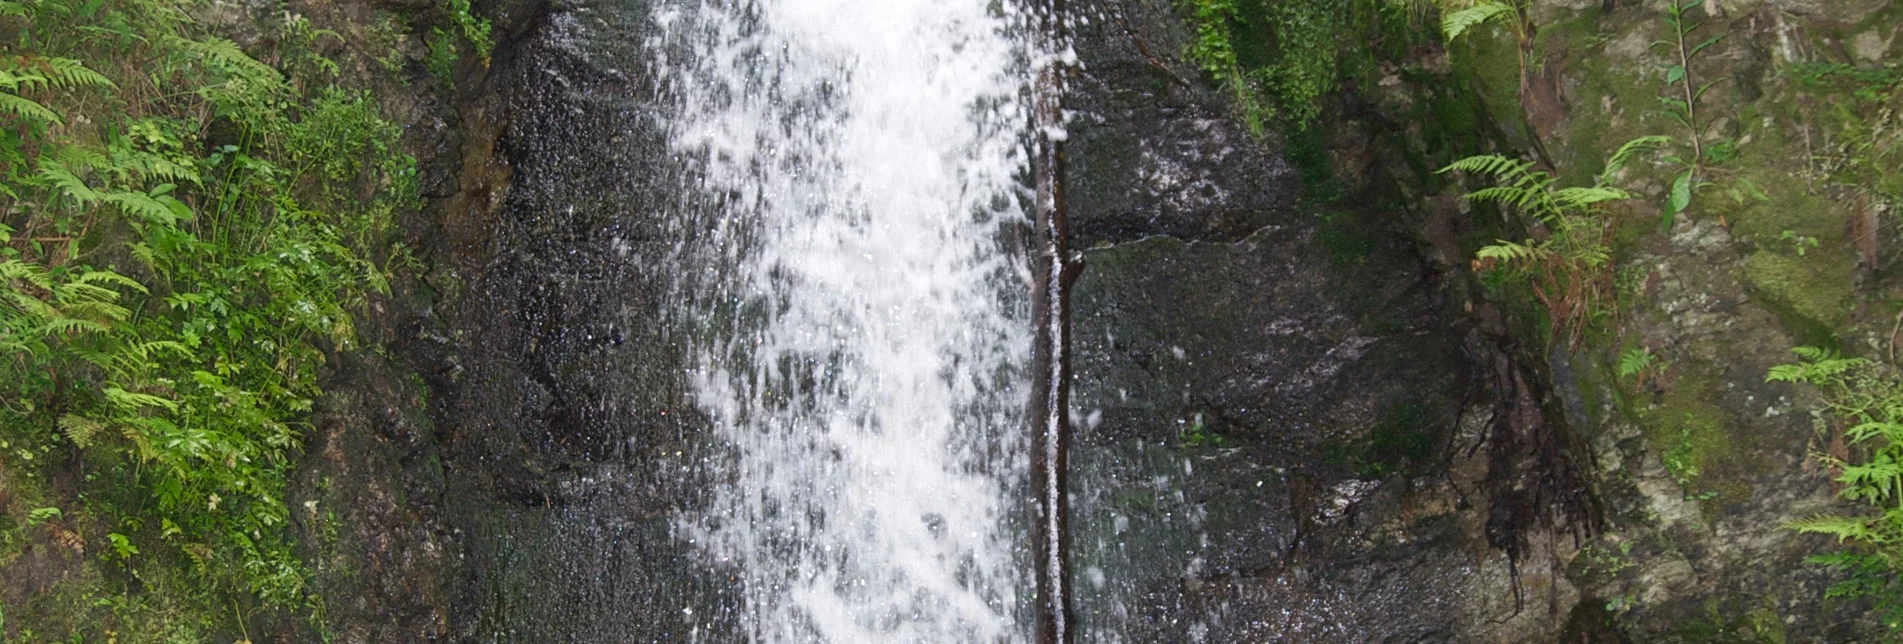 Hiking route Romai waterfall round, St. Jakob im Walde - Touren-Impression #1 | © Reinhold Orgis